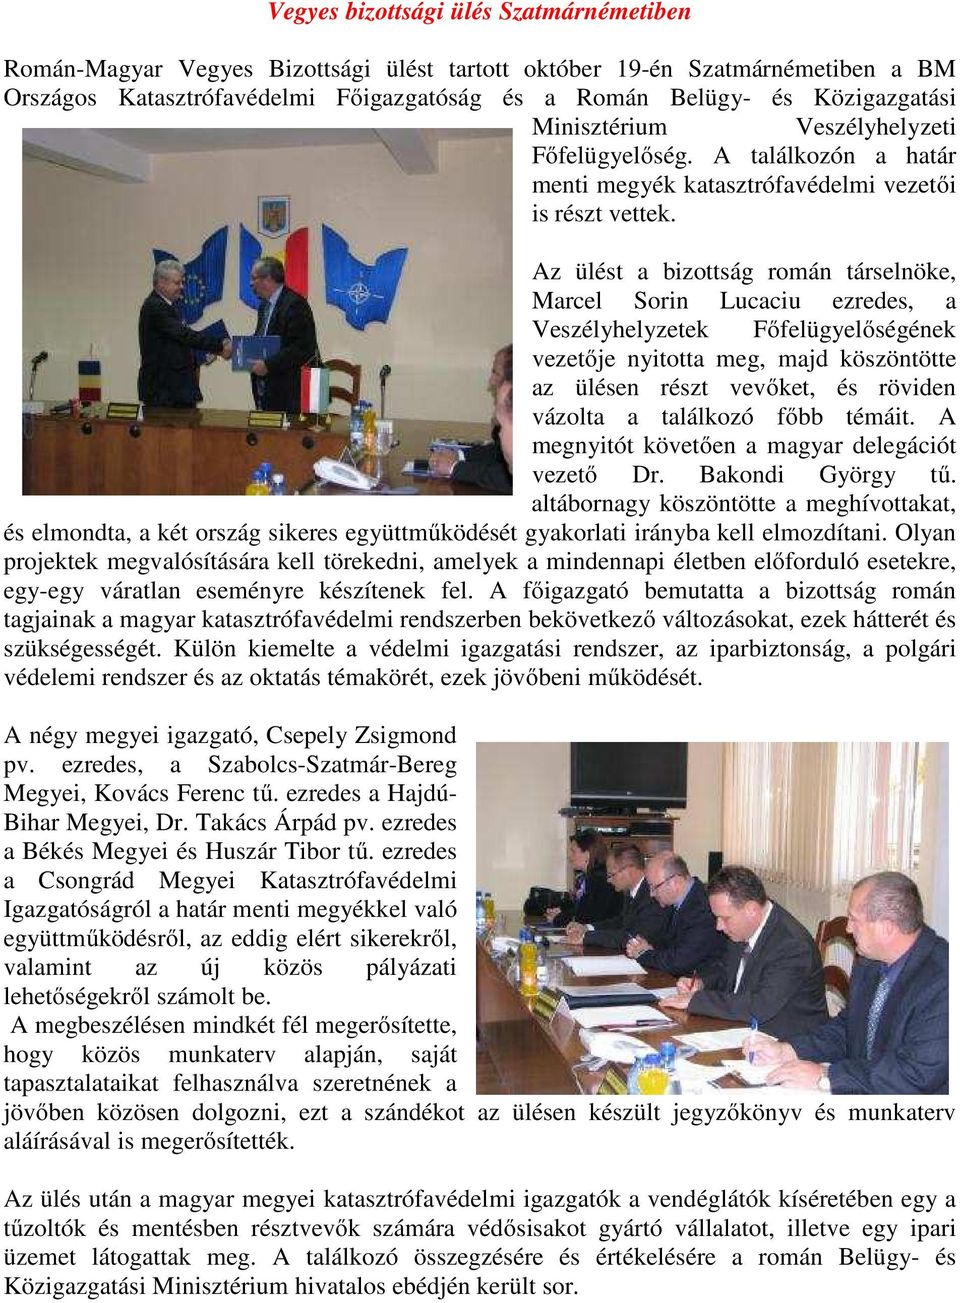 Az ülést a bizottság román társelnöke, Marcel Sorin Lucaciu ezredes, a Veszélyhelyzetek Főfelügyelőségének vezetője nyitotta meg, majd köszöntötte az ülésen részt vevőket, és röviden vázolta a